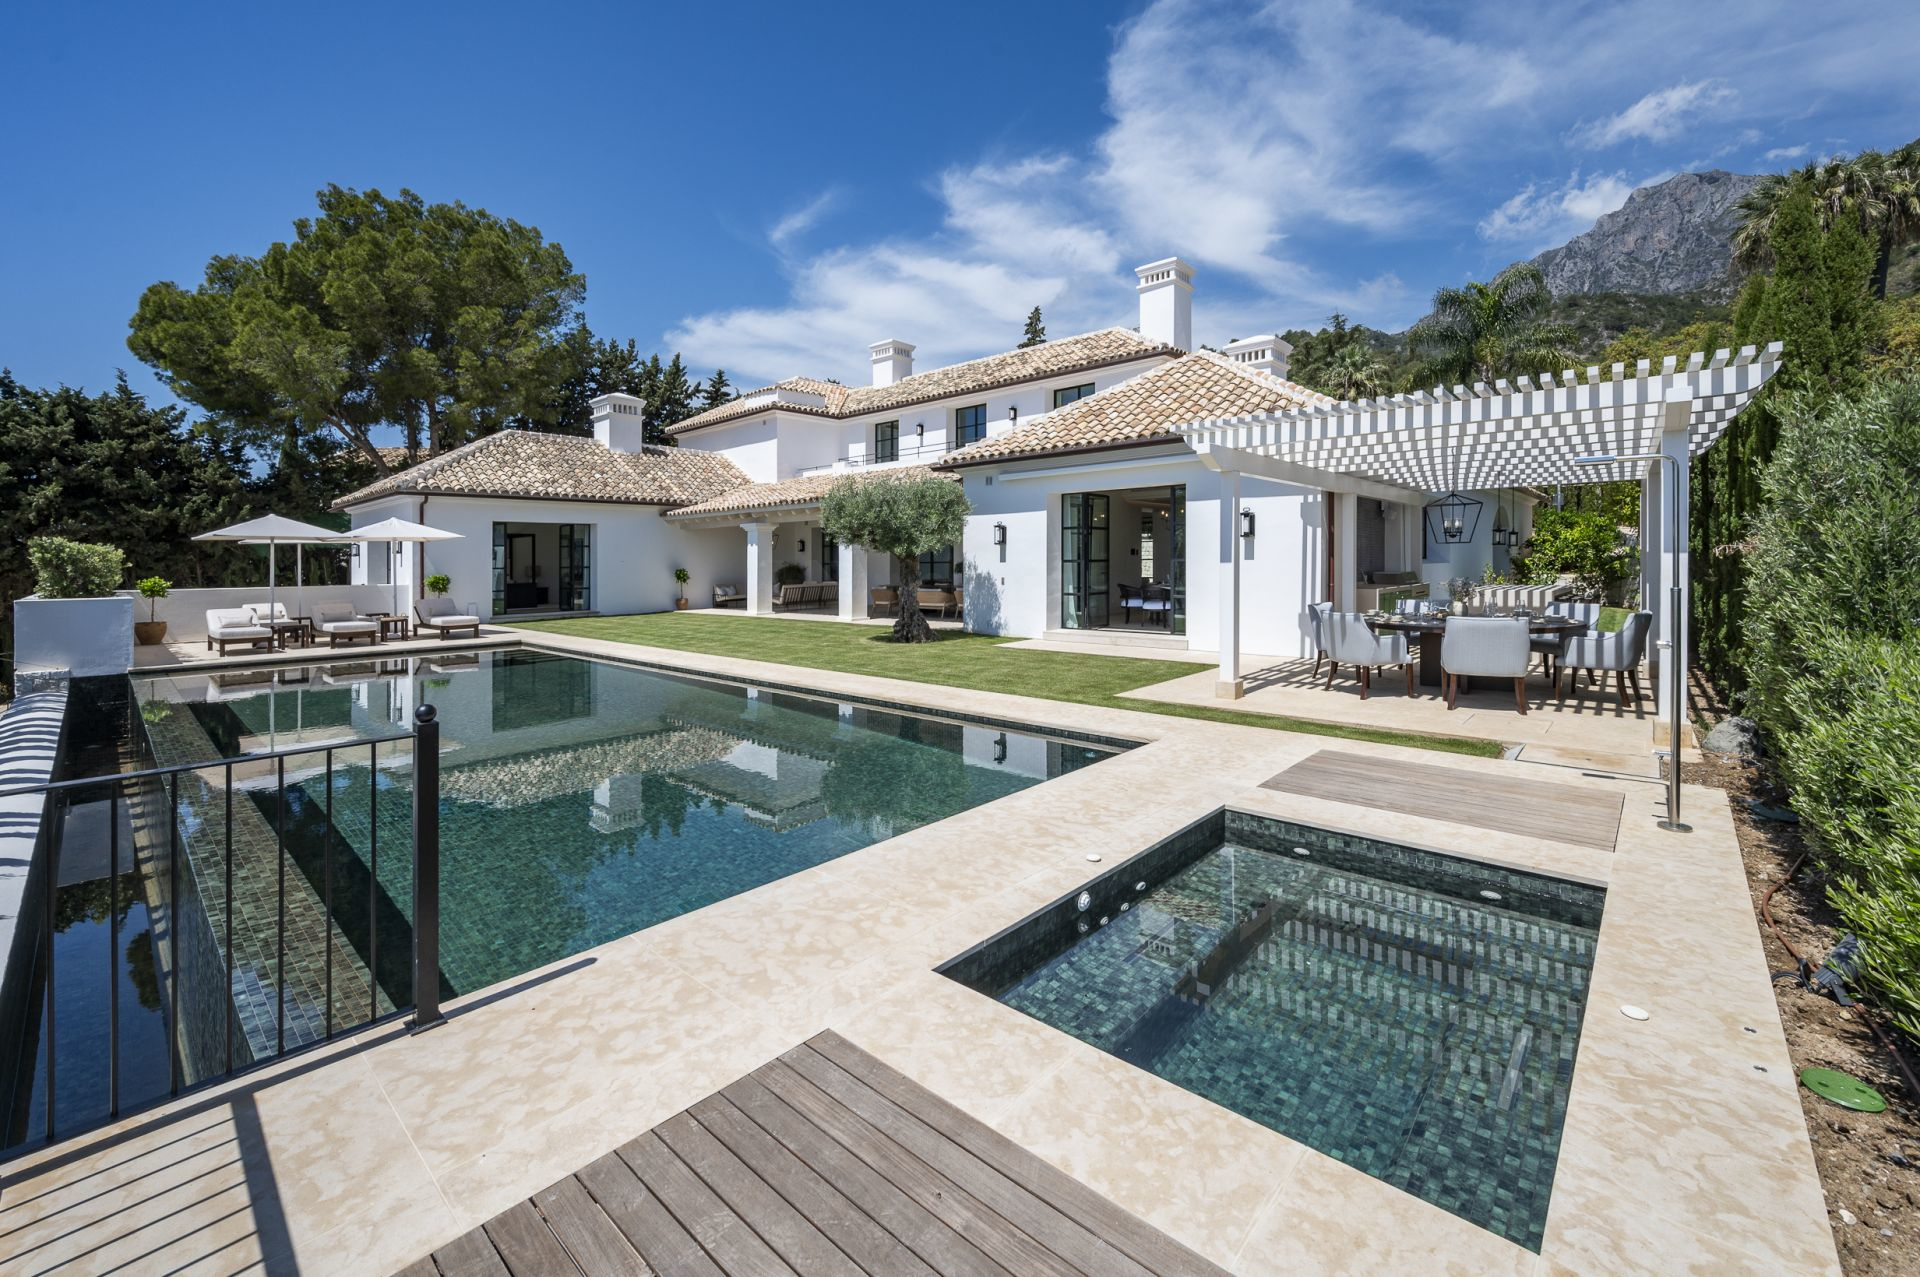 Excepcional villa de ultra lujo ubicada en una de las zonas más exclusivas de Marbella